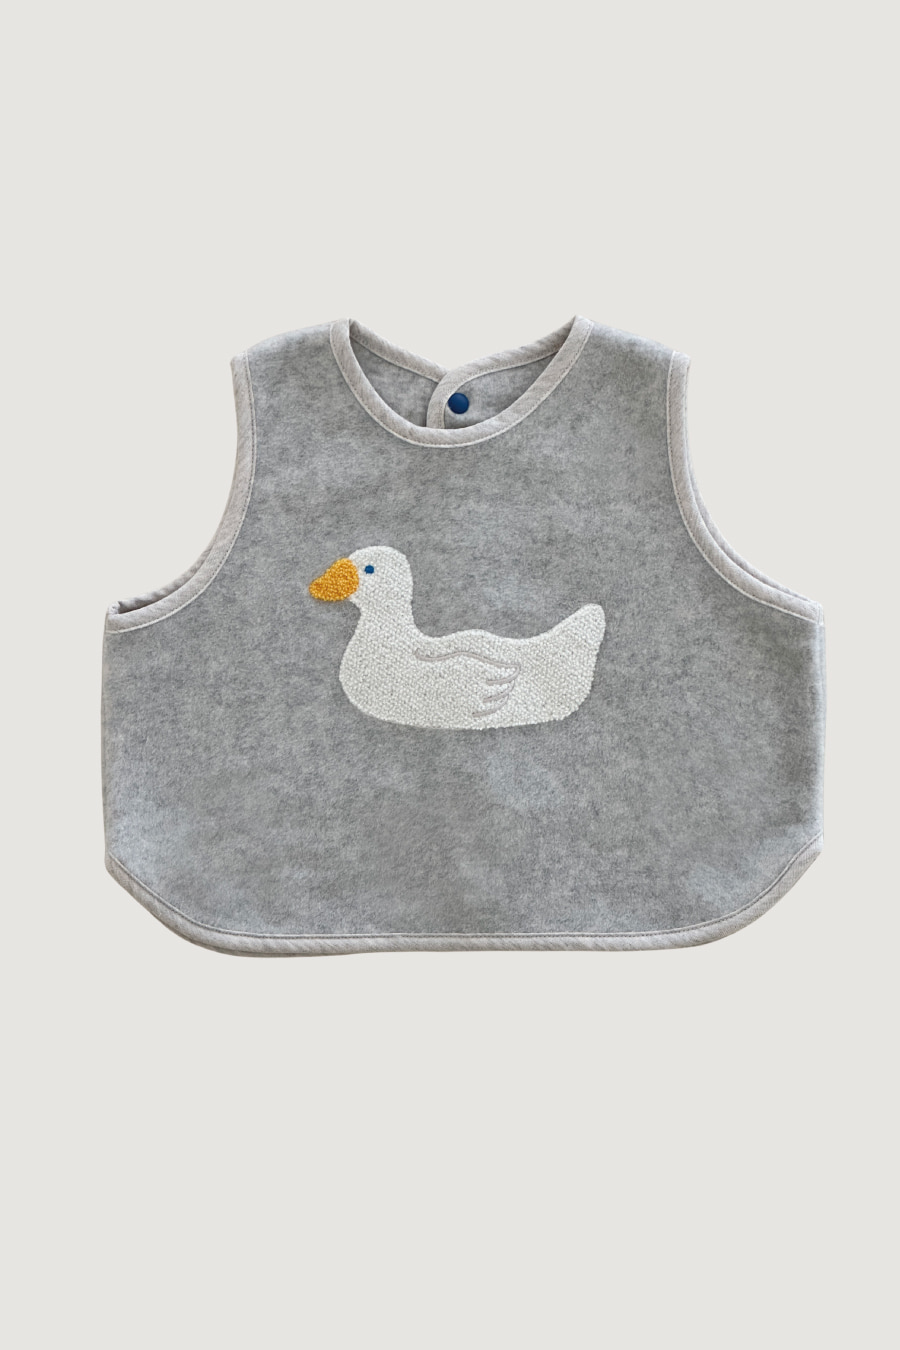 Dream Vest (Goose)